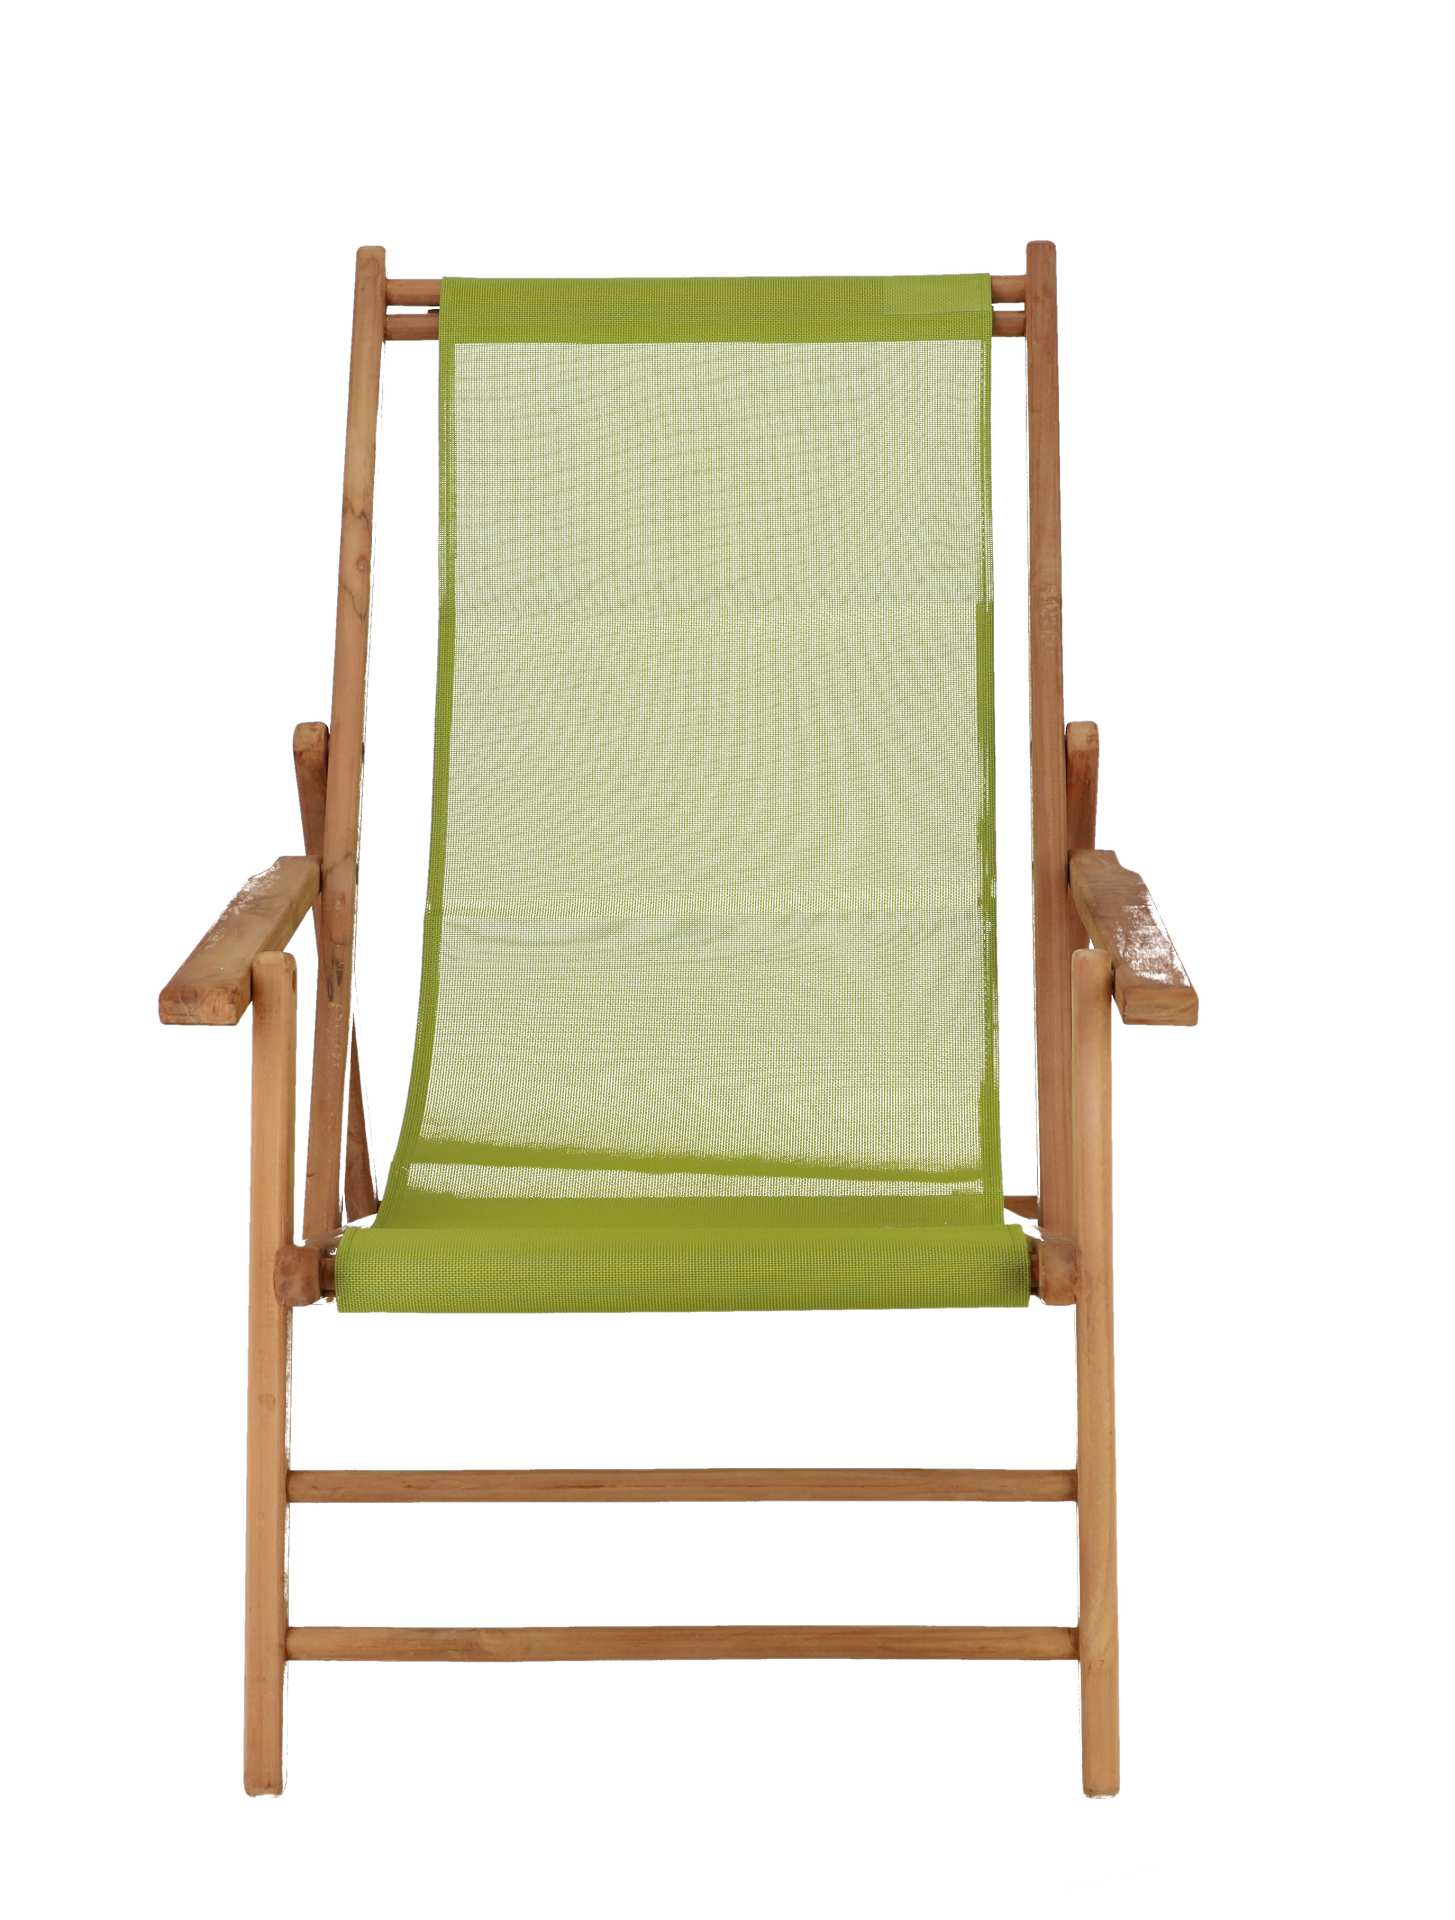 Der Liegestuhl Maxx wurde aus Teakholz gefertigt. Der Bezug ist in verschiedenen Farben erhältlich. Das schlichte Design der Marke Jan Kurtz überzeugt und lässt die Liege zu einem echten Hingucker werden.